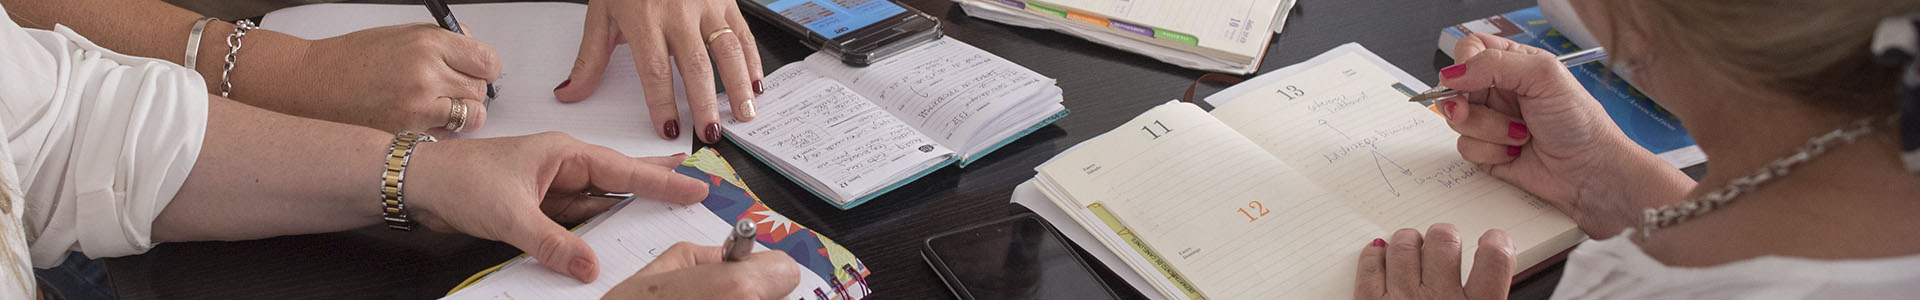 Manos de estudiantes, trabajando en cuadernos y papeles 